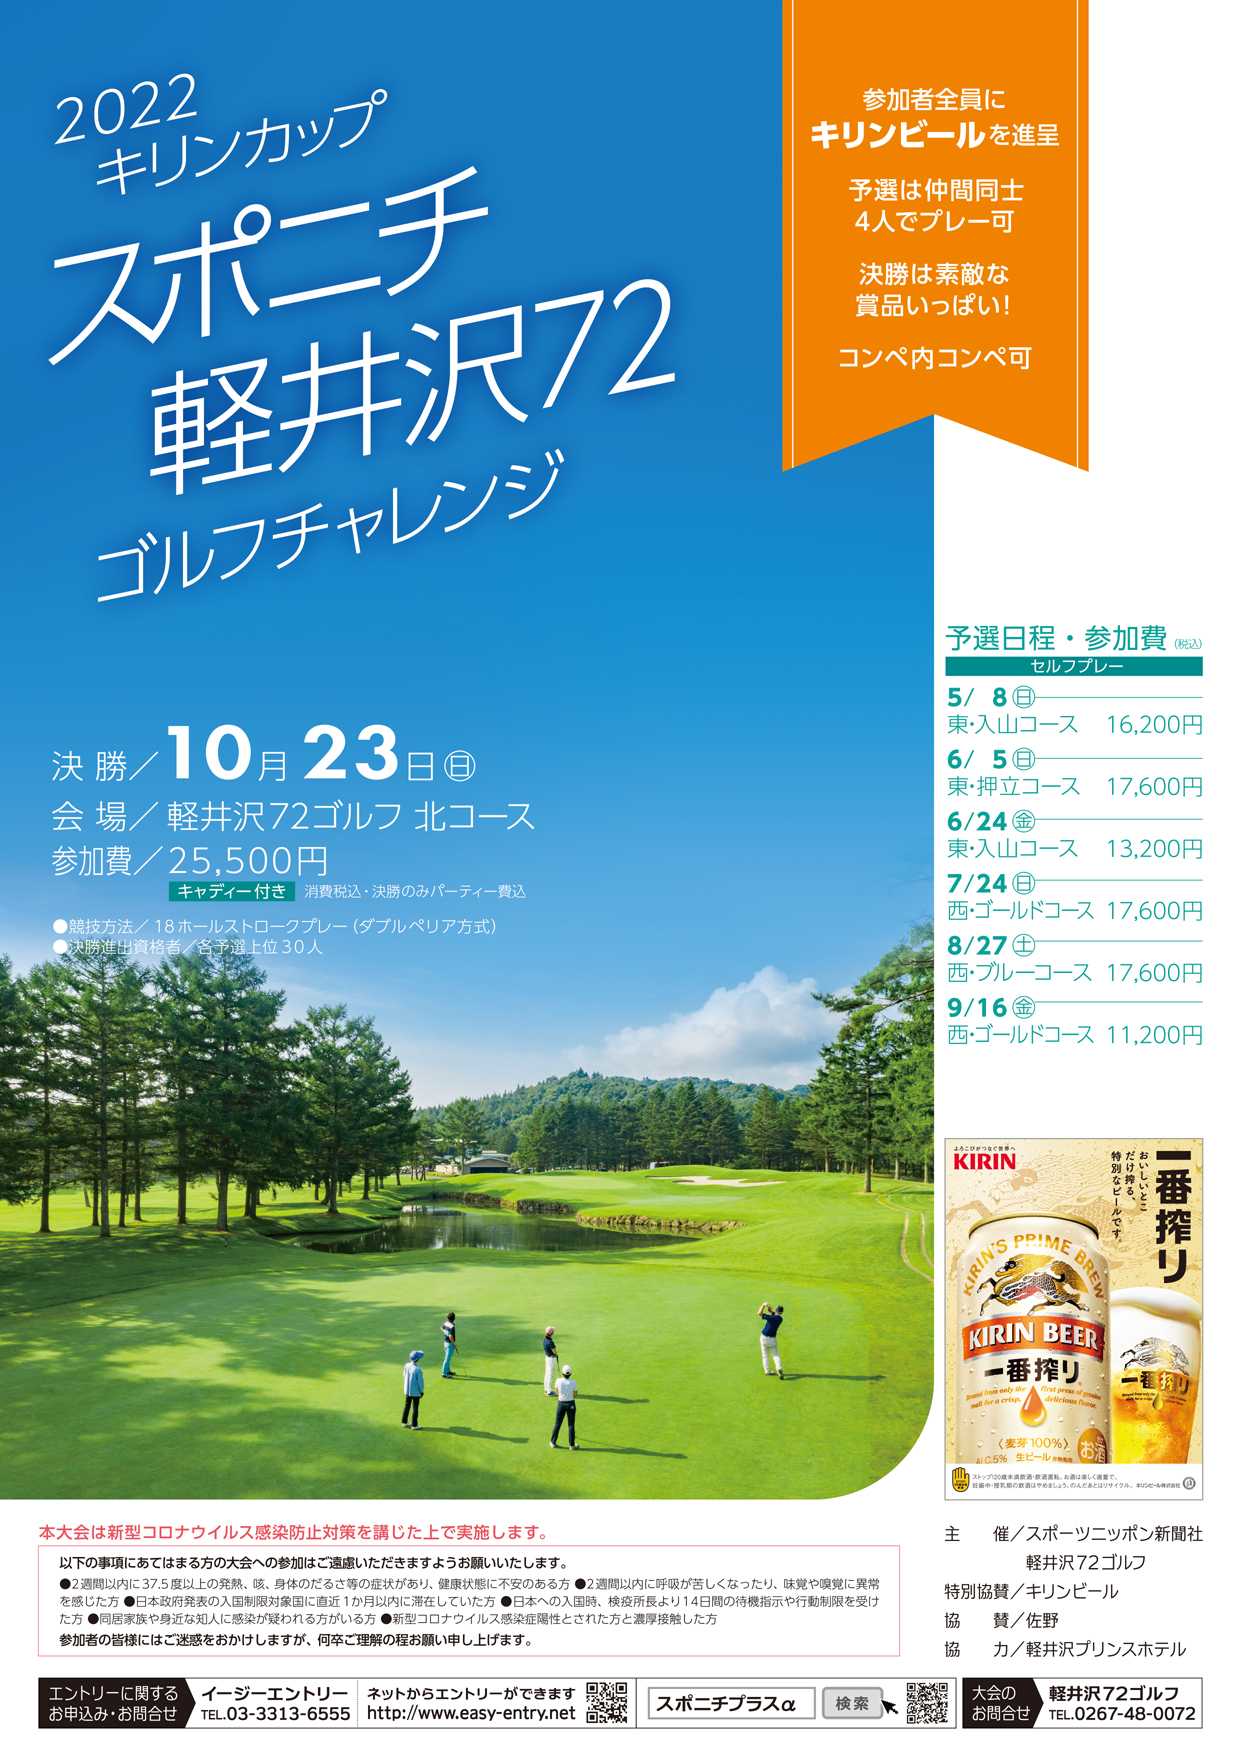 13(日) 軽井沢72ゴルフ 女子ゴルフトーナメントの駐車券 通販